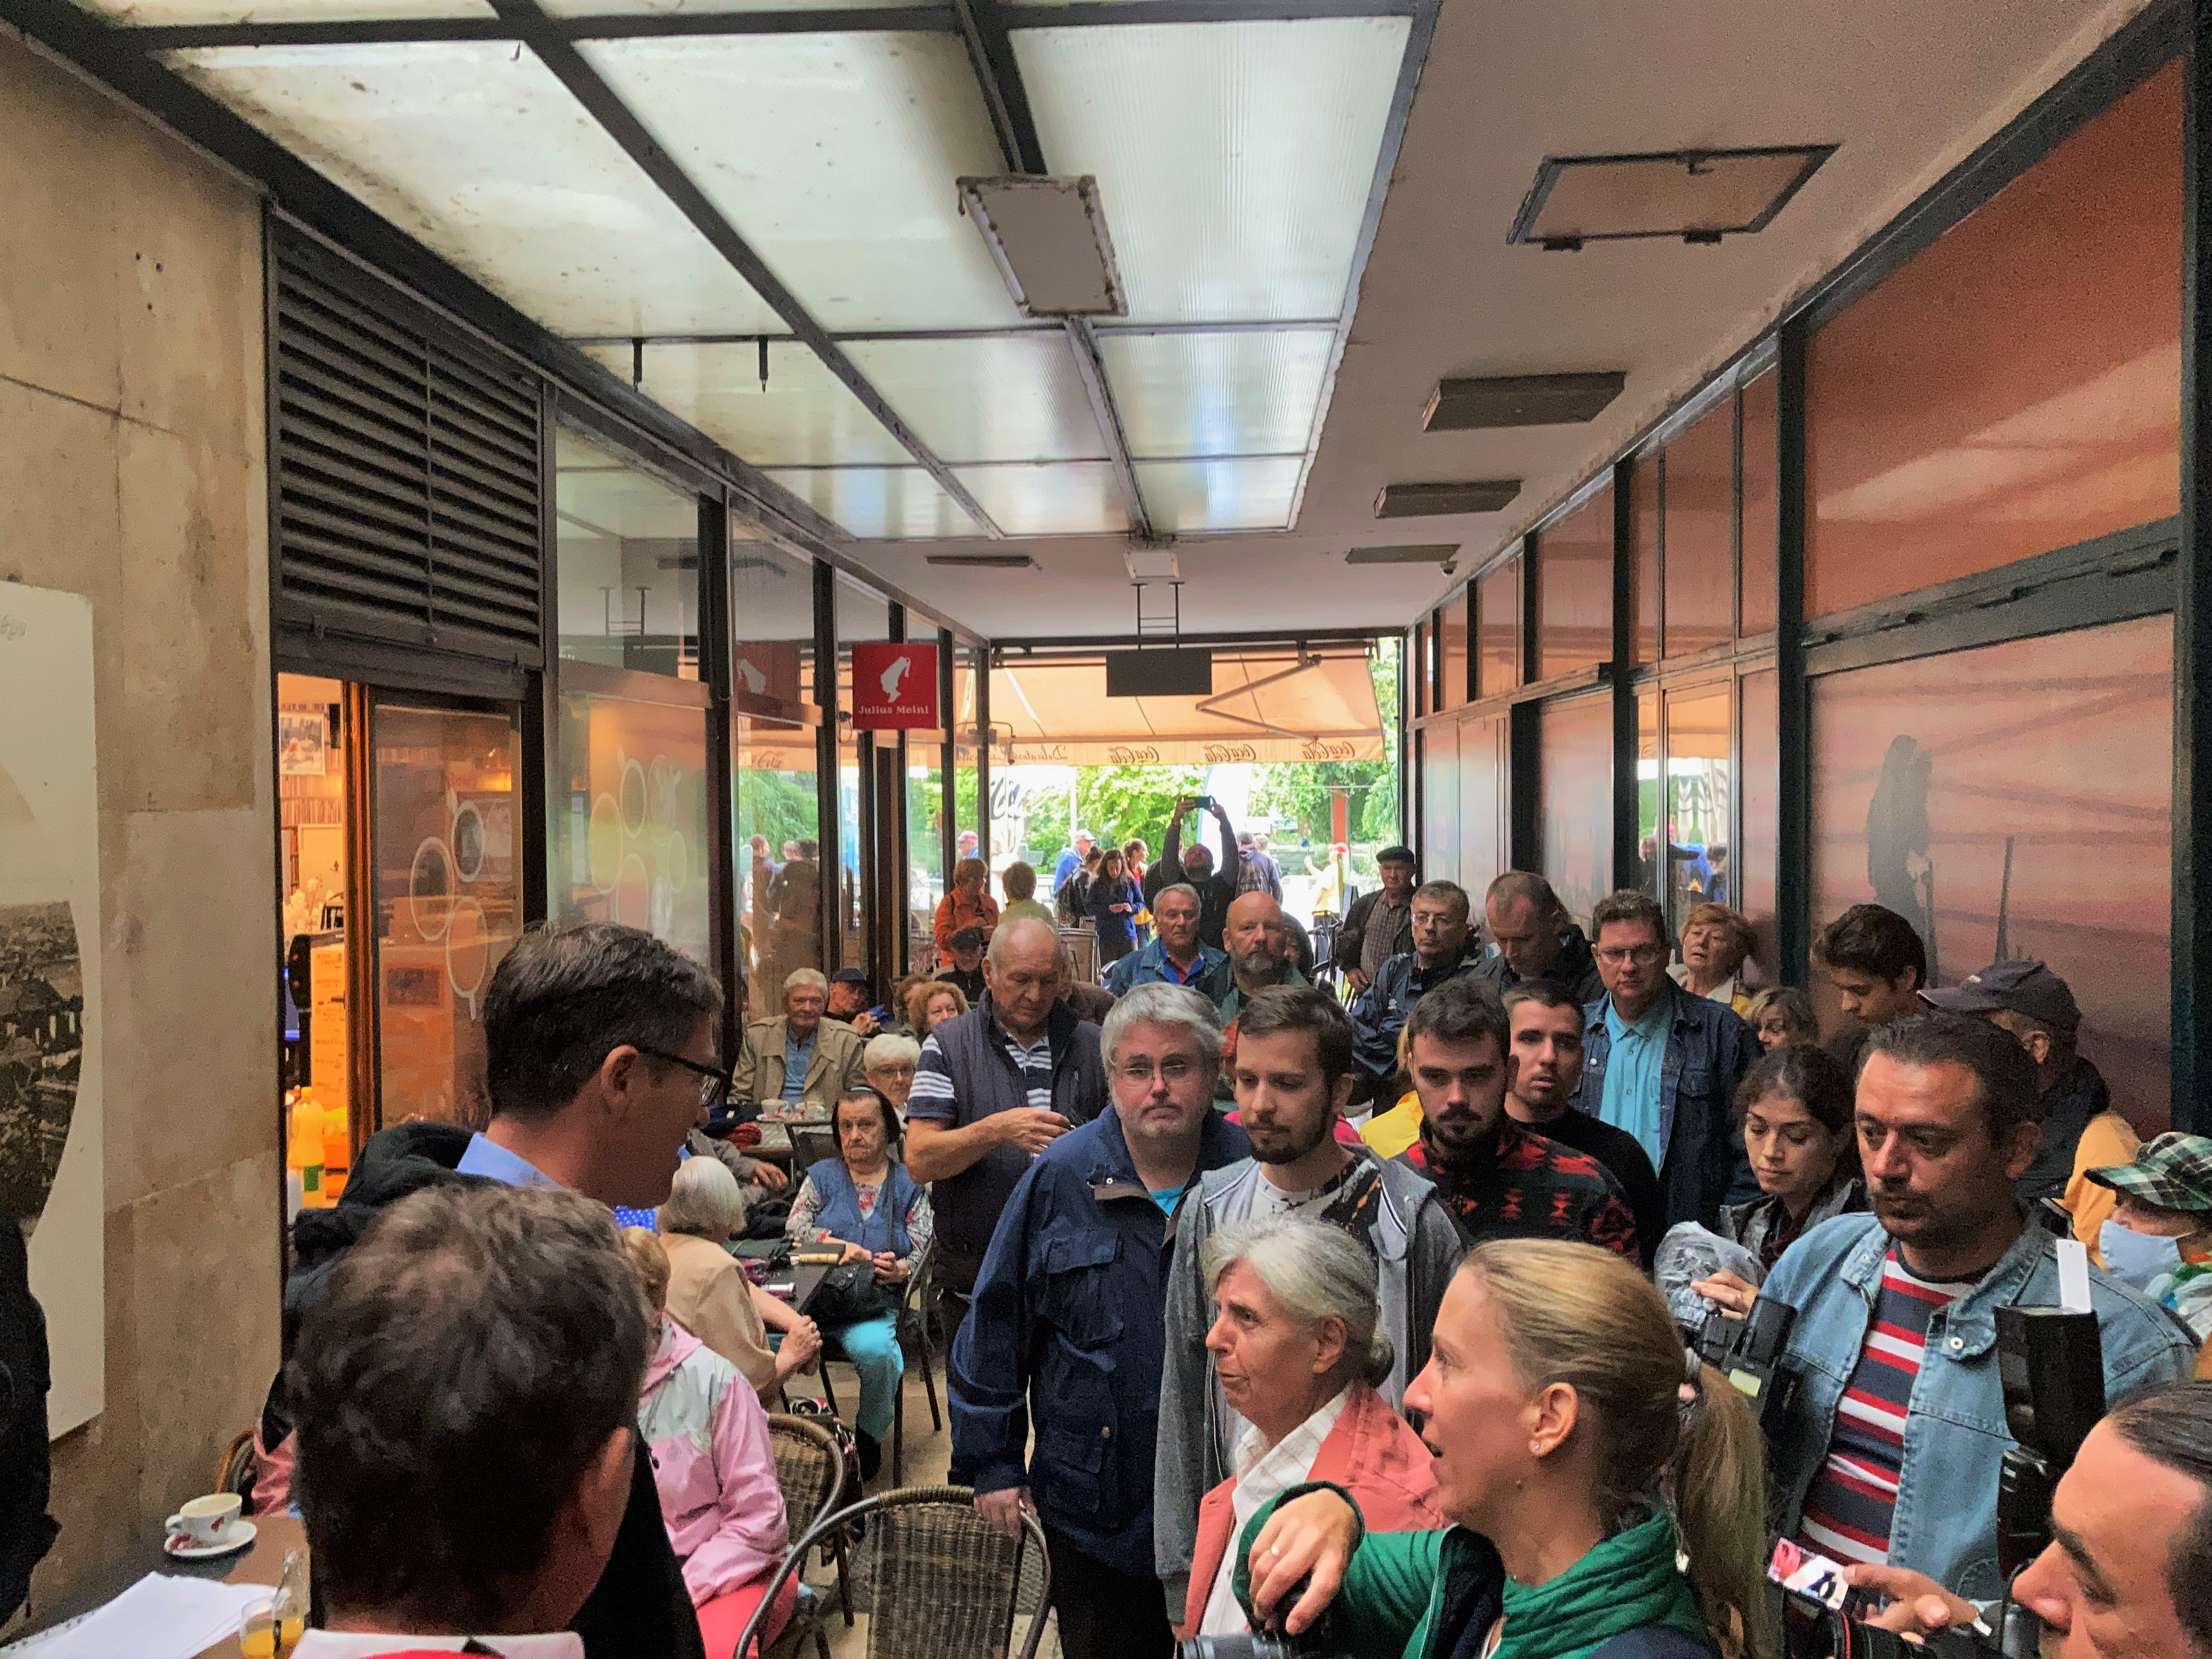 Körülbelül egy jó 70-100 ember gyűlt össze a rossz idő ellenére. Az eső miatt a Kossuth tér helyett egy kávézó mellett tartották az eseményt.